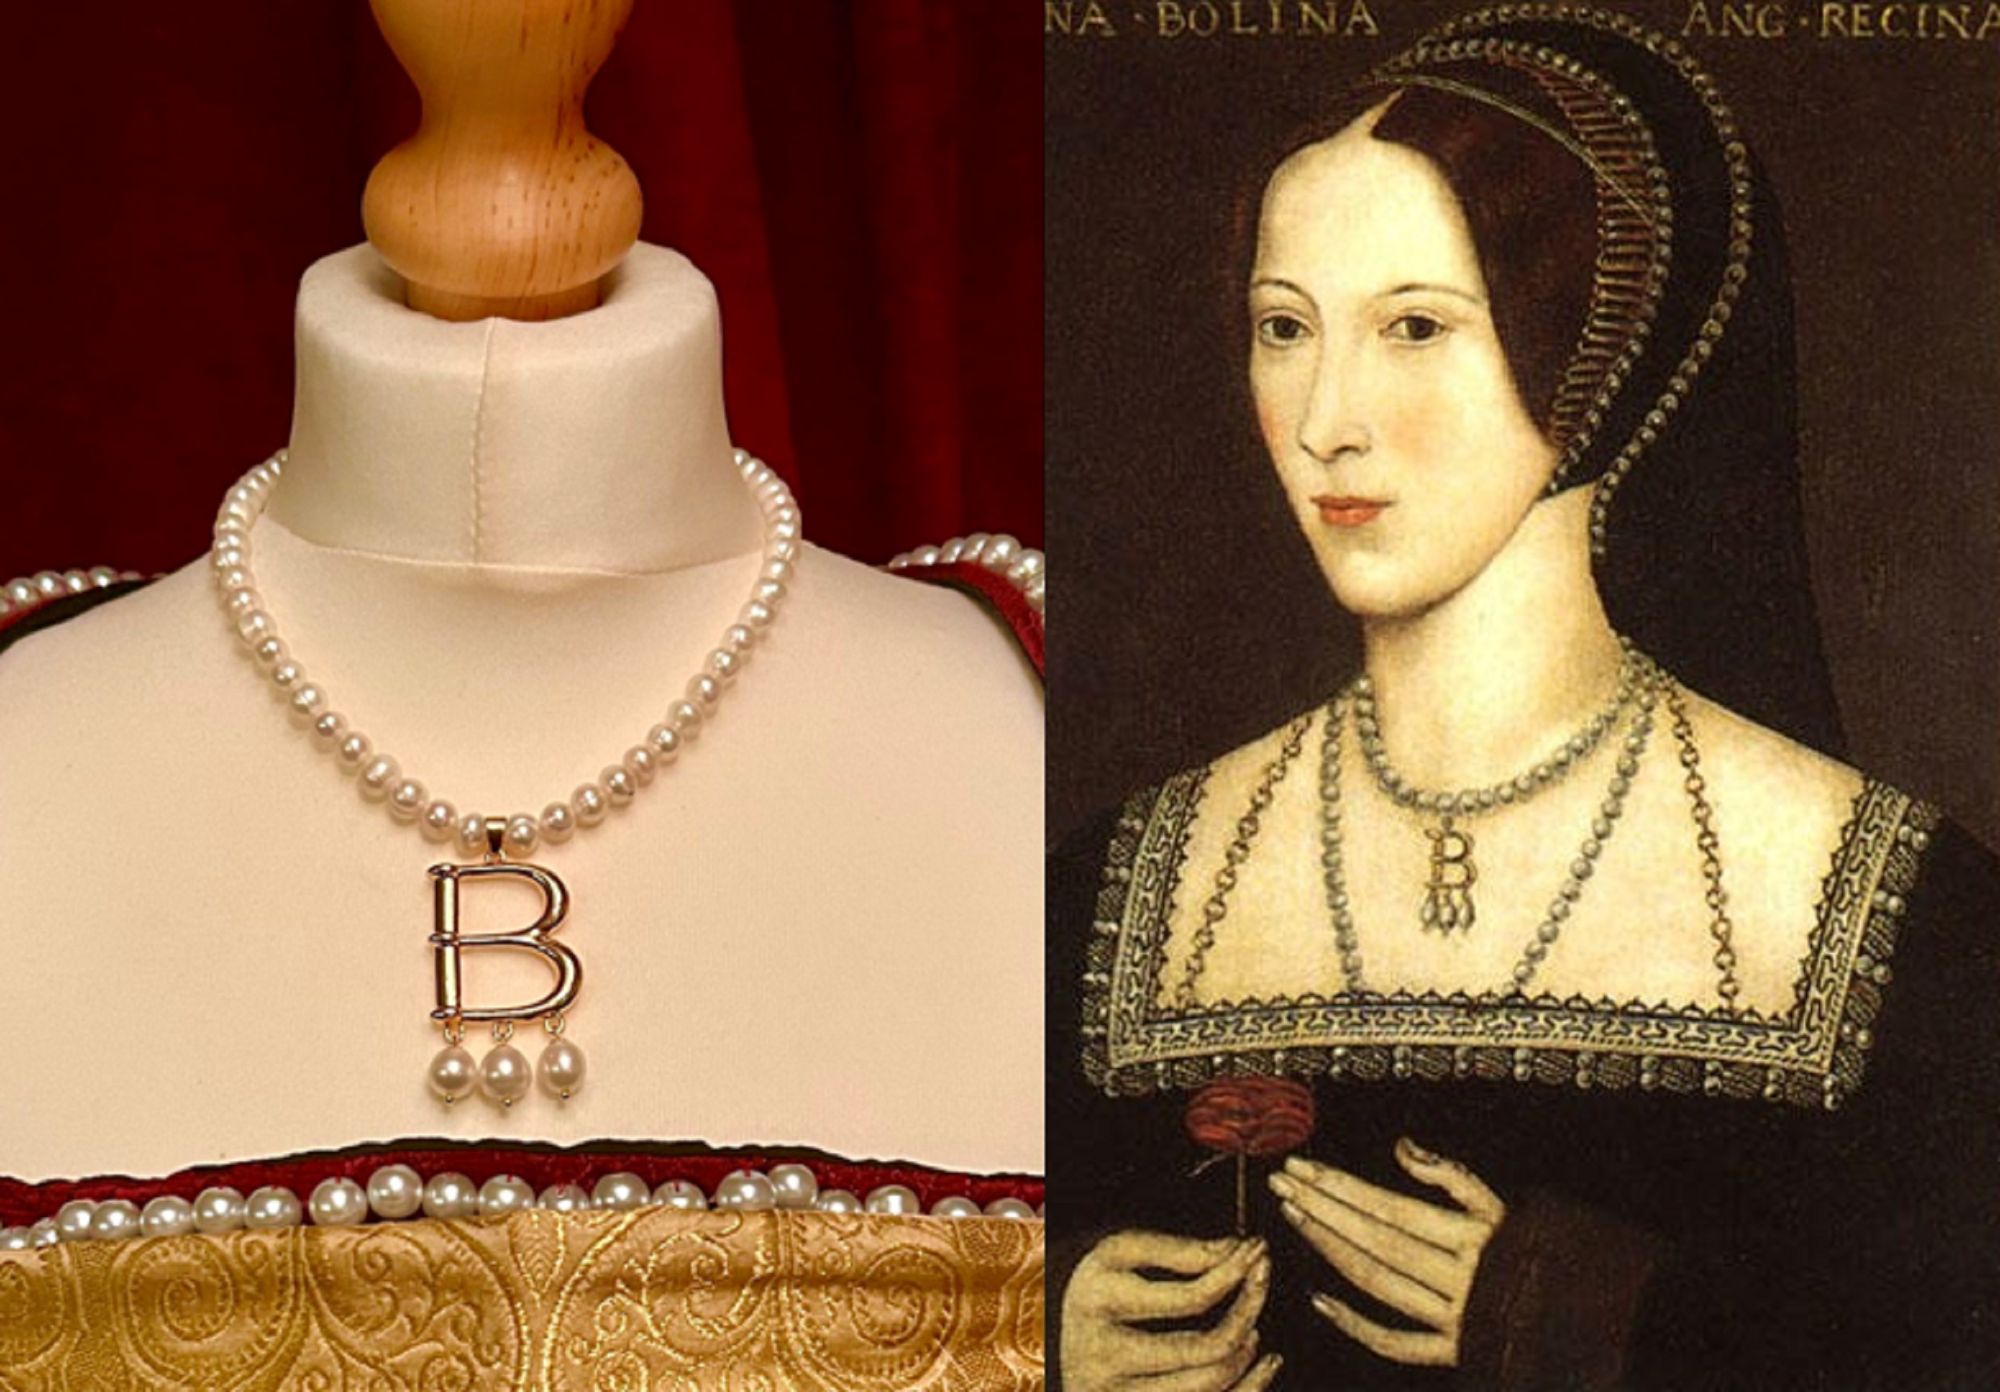 Anne Boleyn B necklace compare classic.jpg